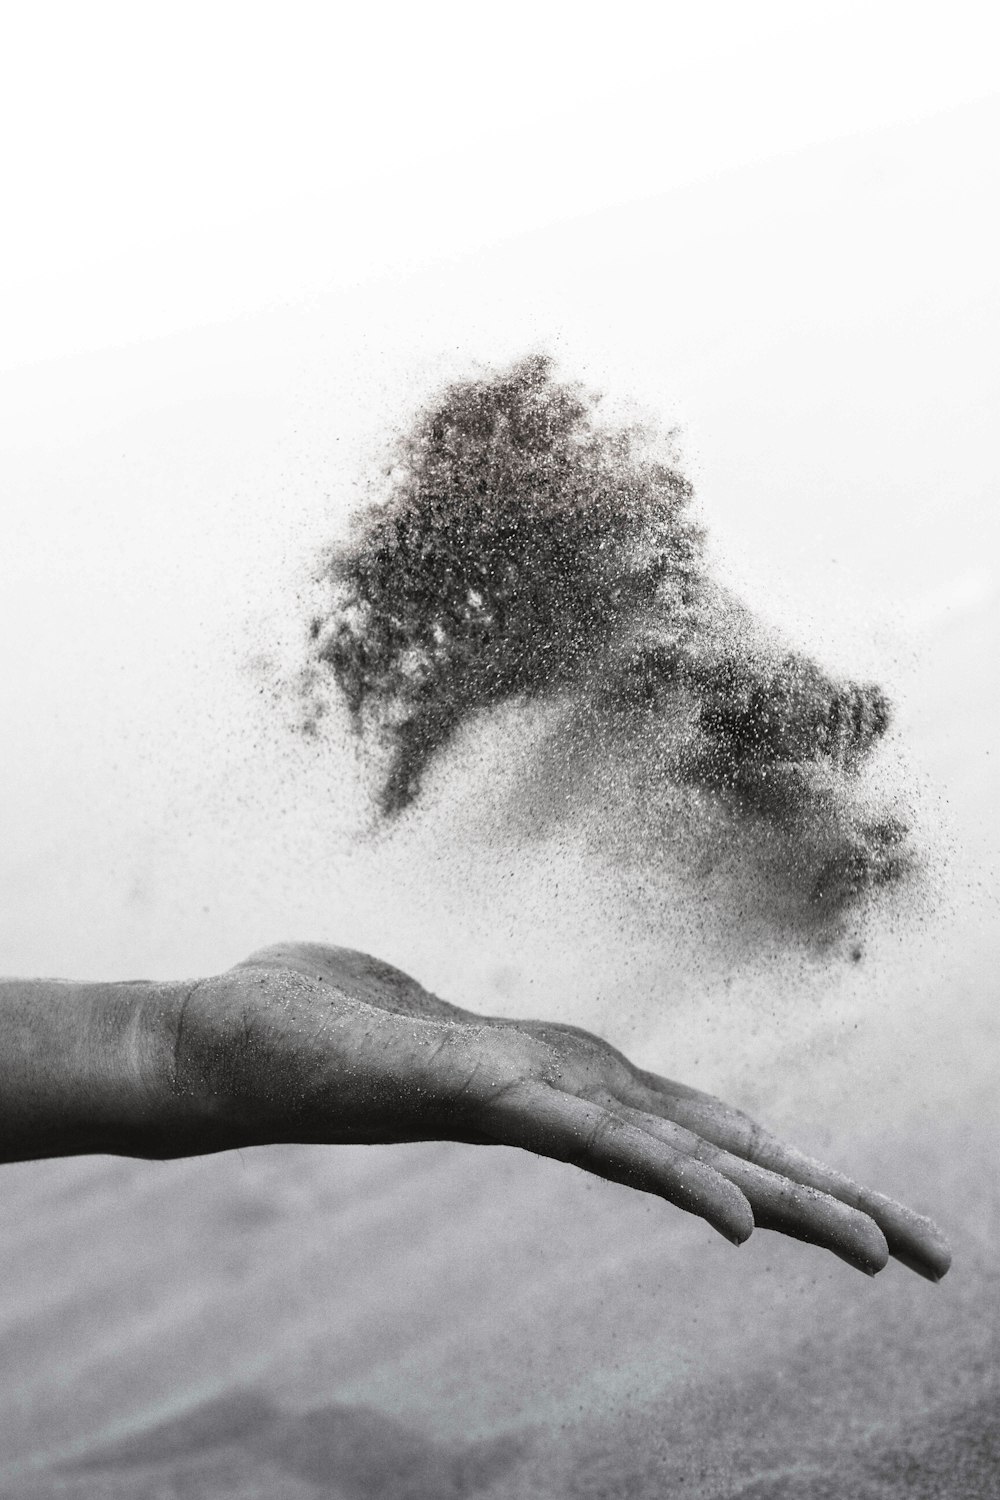 fotografia em tons de cinza da mão da pessoa espalhando areia